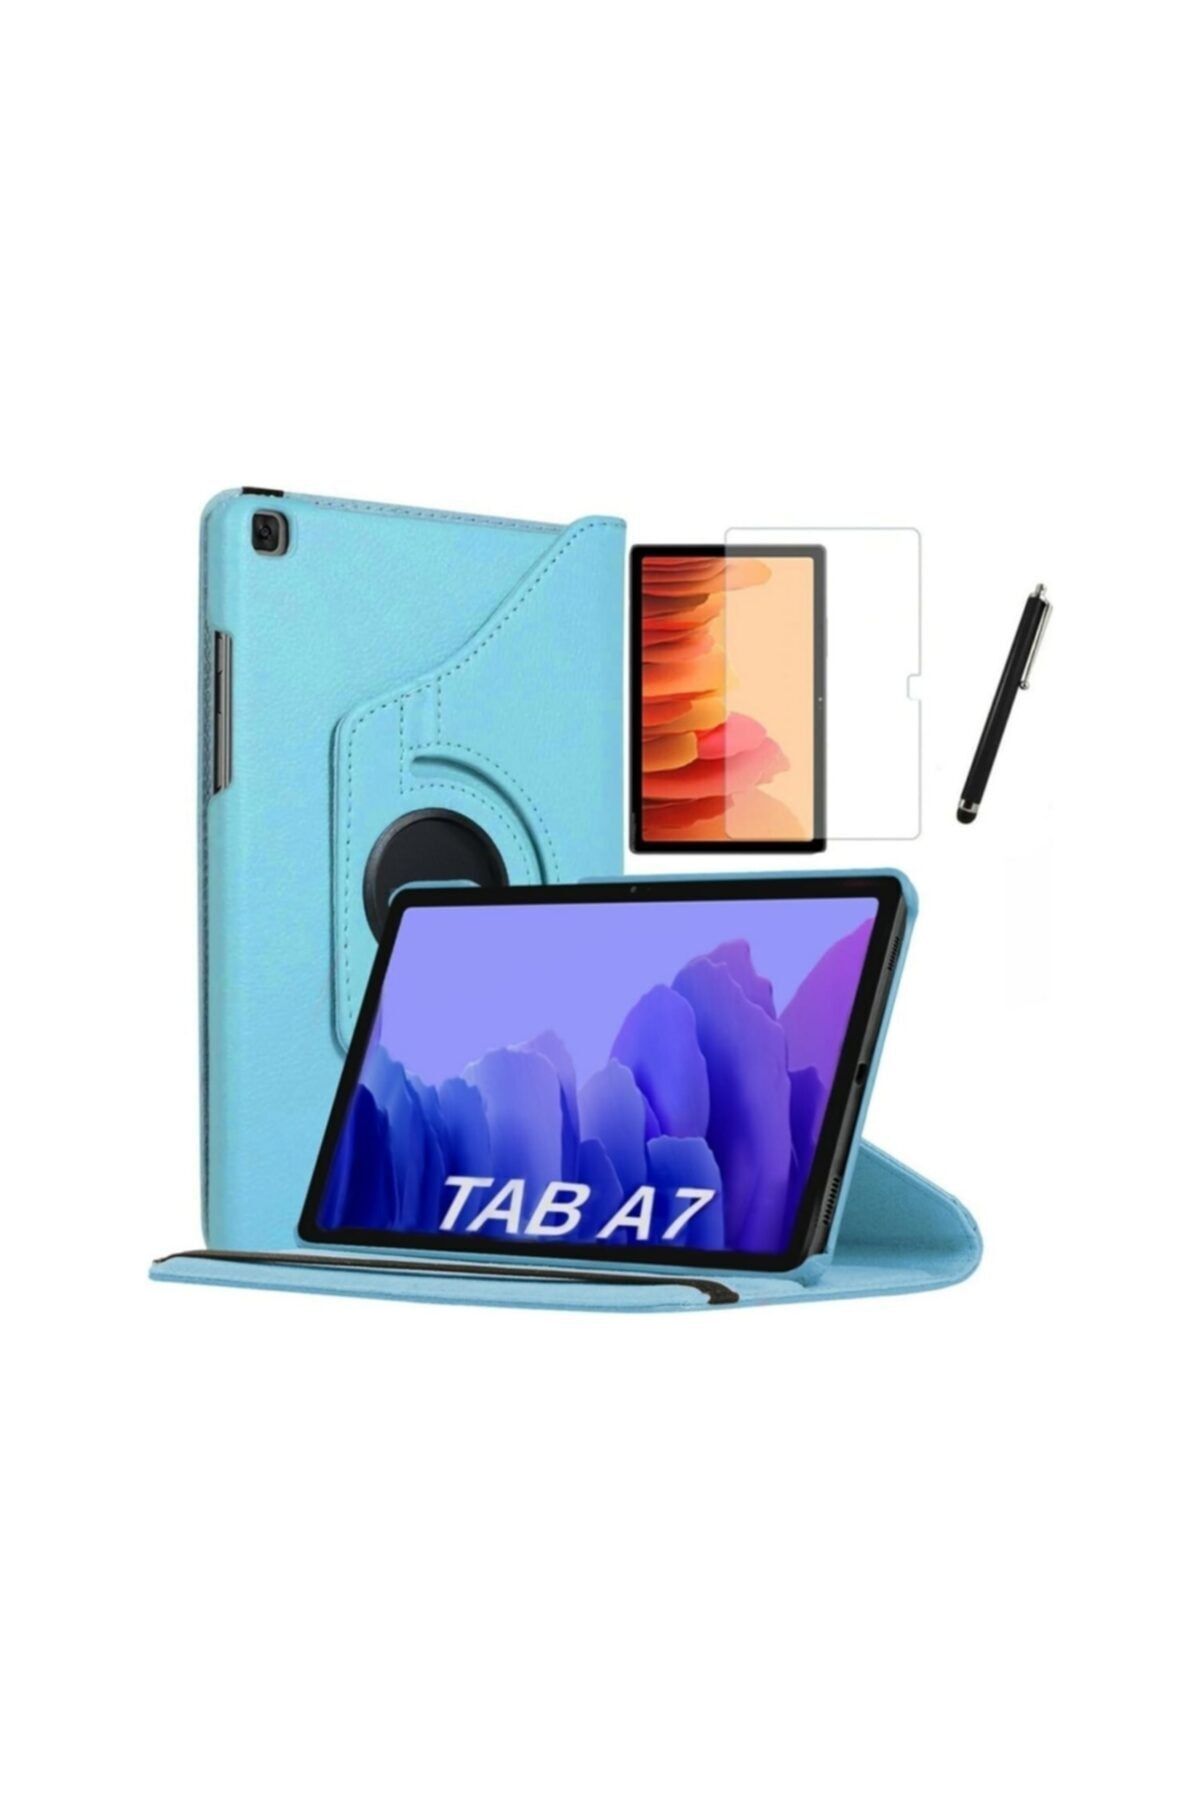 GoGoPlus Ipad Air 4 10.9inç 2020 Uyumlu Kılıf 360 Dönebilen Kapaklı Tablet Kılıfı Ekran Koruyucu Turkuaz